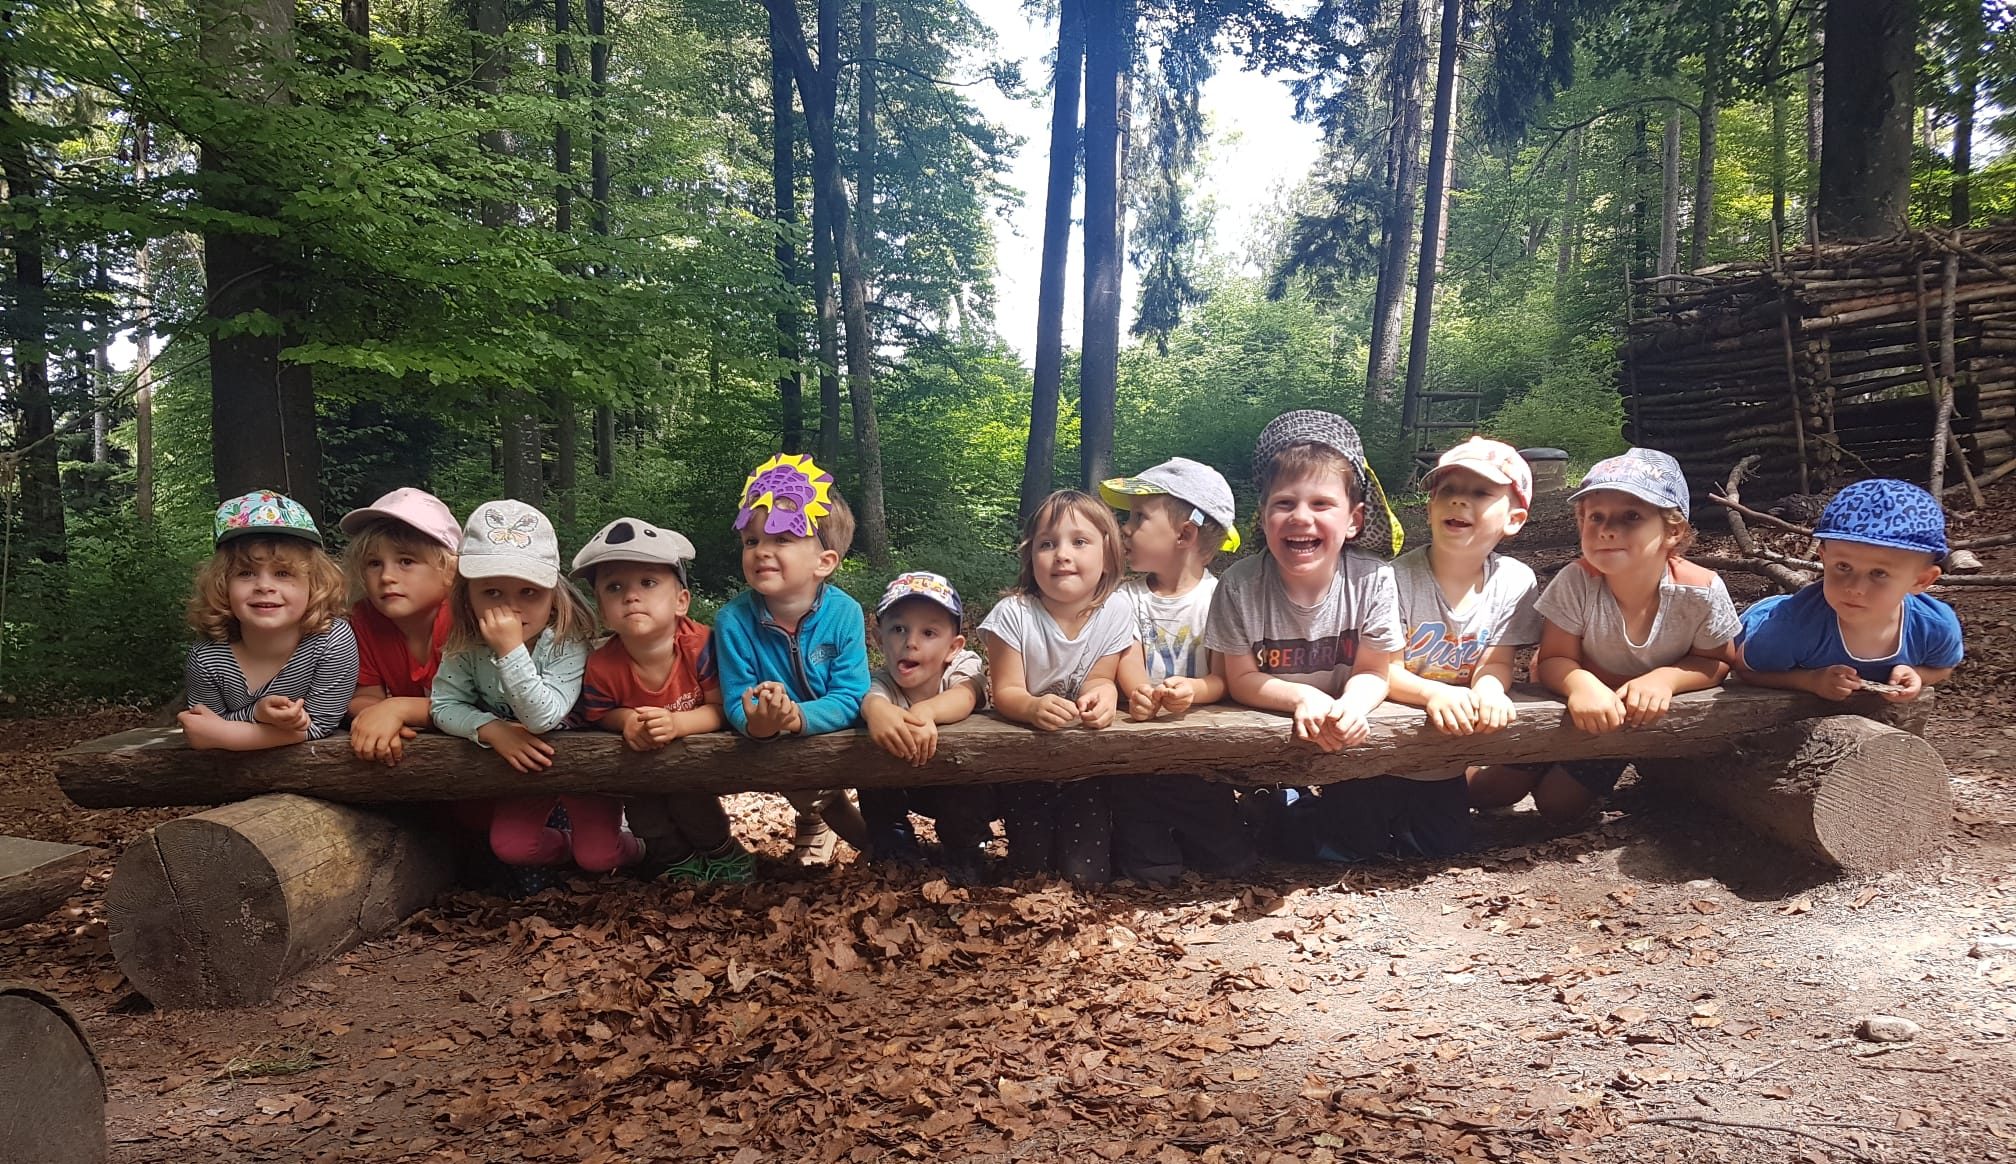 Kinder von der Waldspielgruppe auf einem Baumstamm